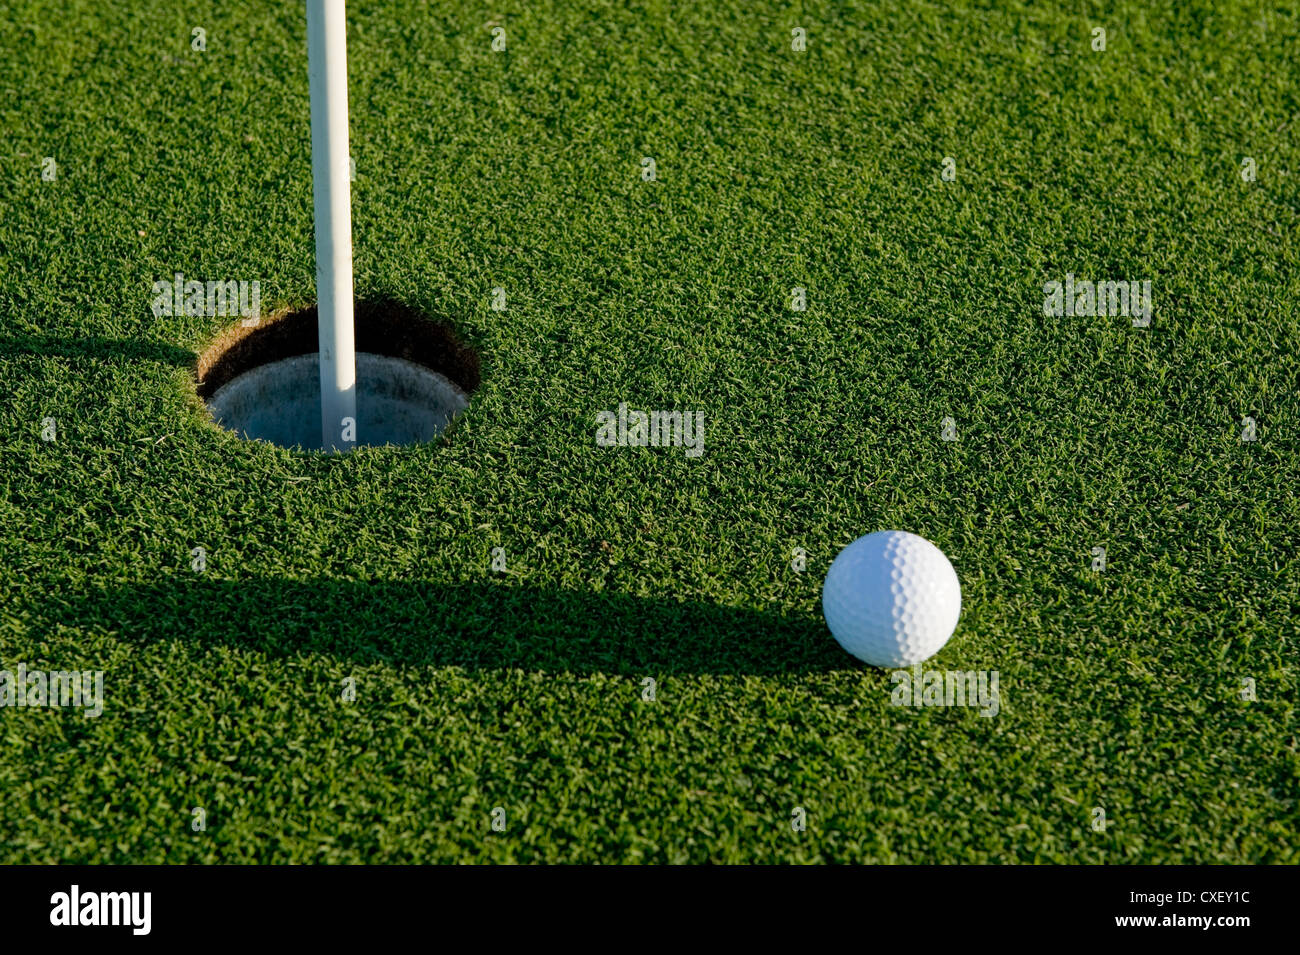 Un corto putt nel gioco del golf su un putting green con una pallina da golf Foto Stock